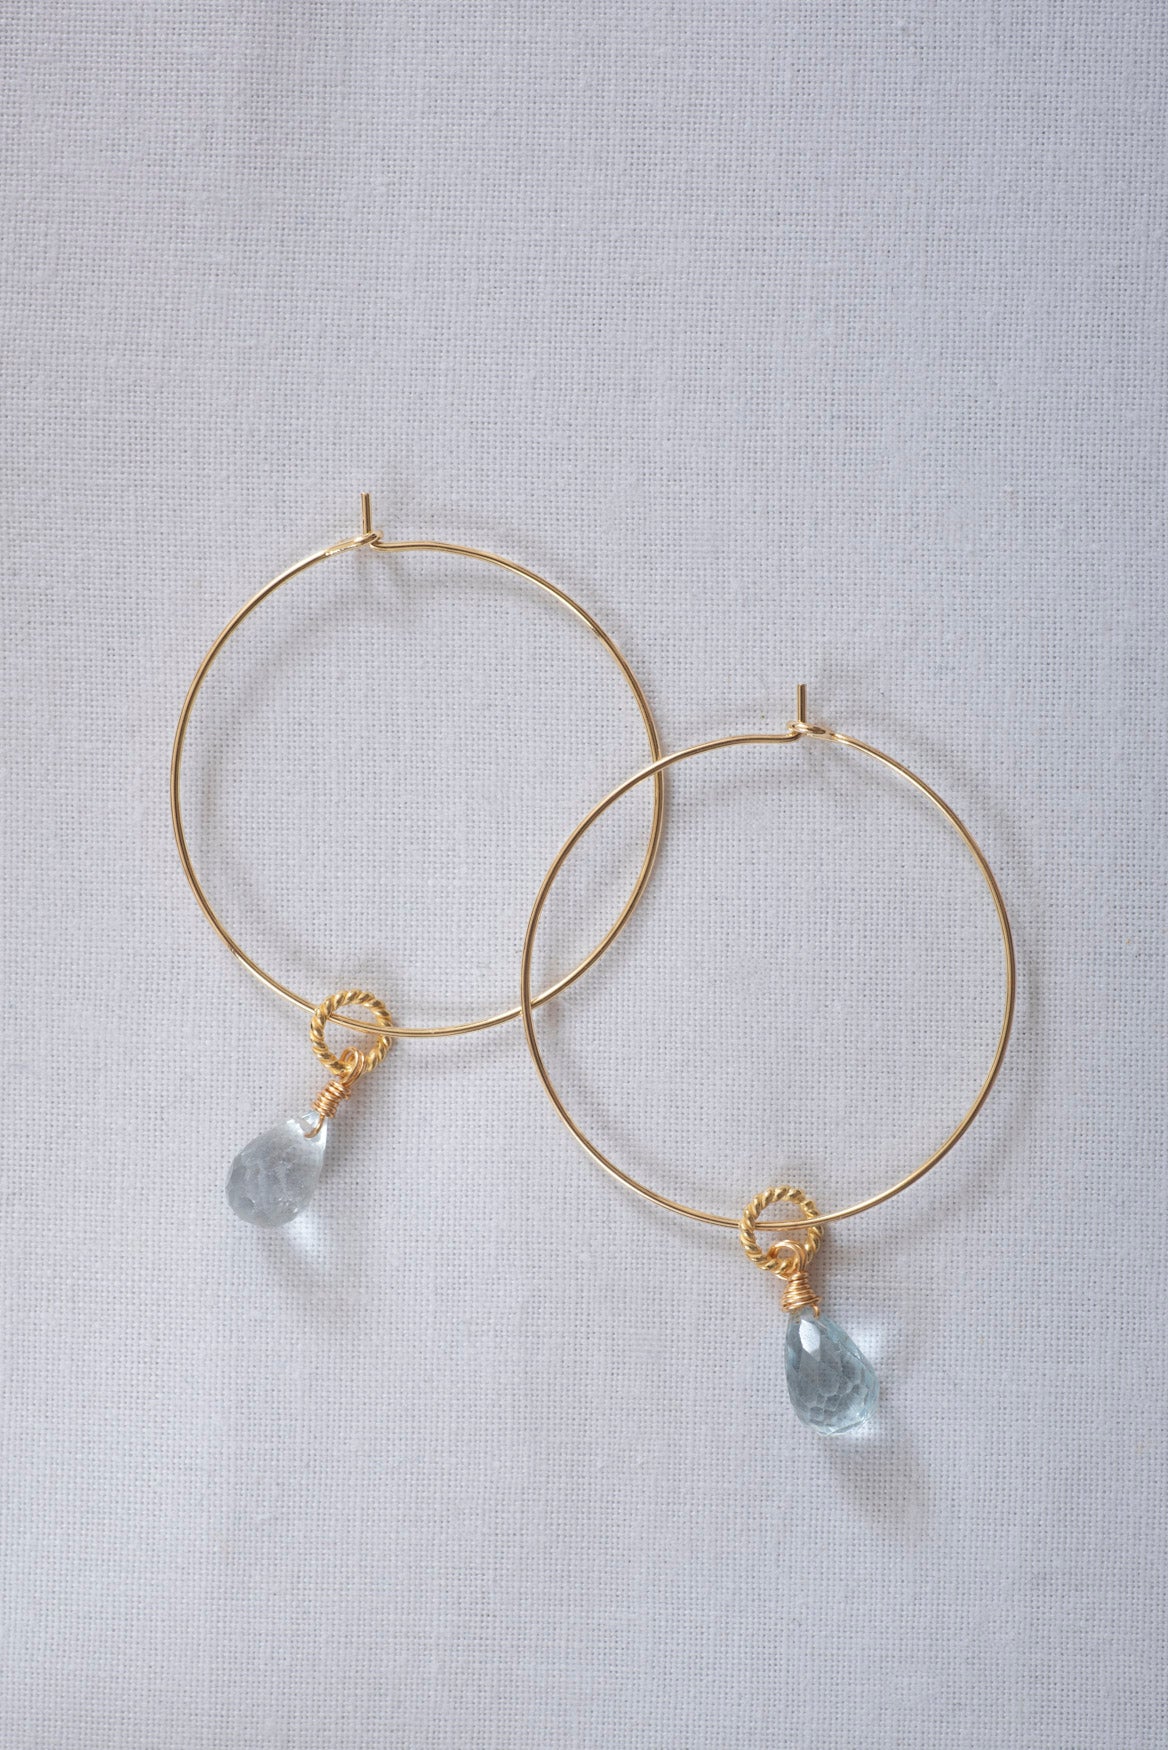 Topaz Hoop Earrings from One Dame Lane Jewellery